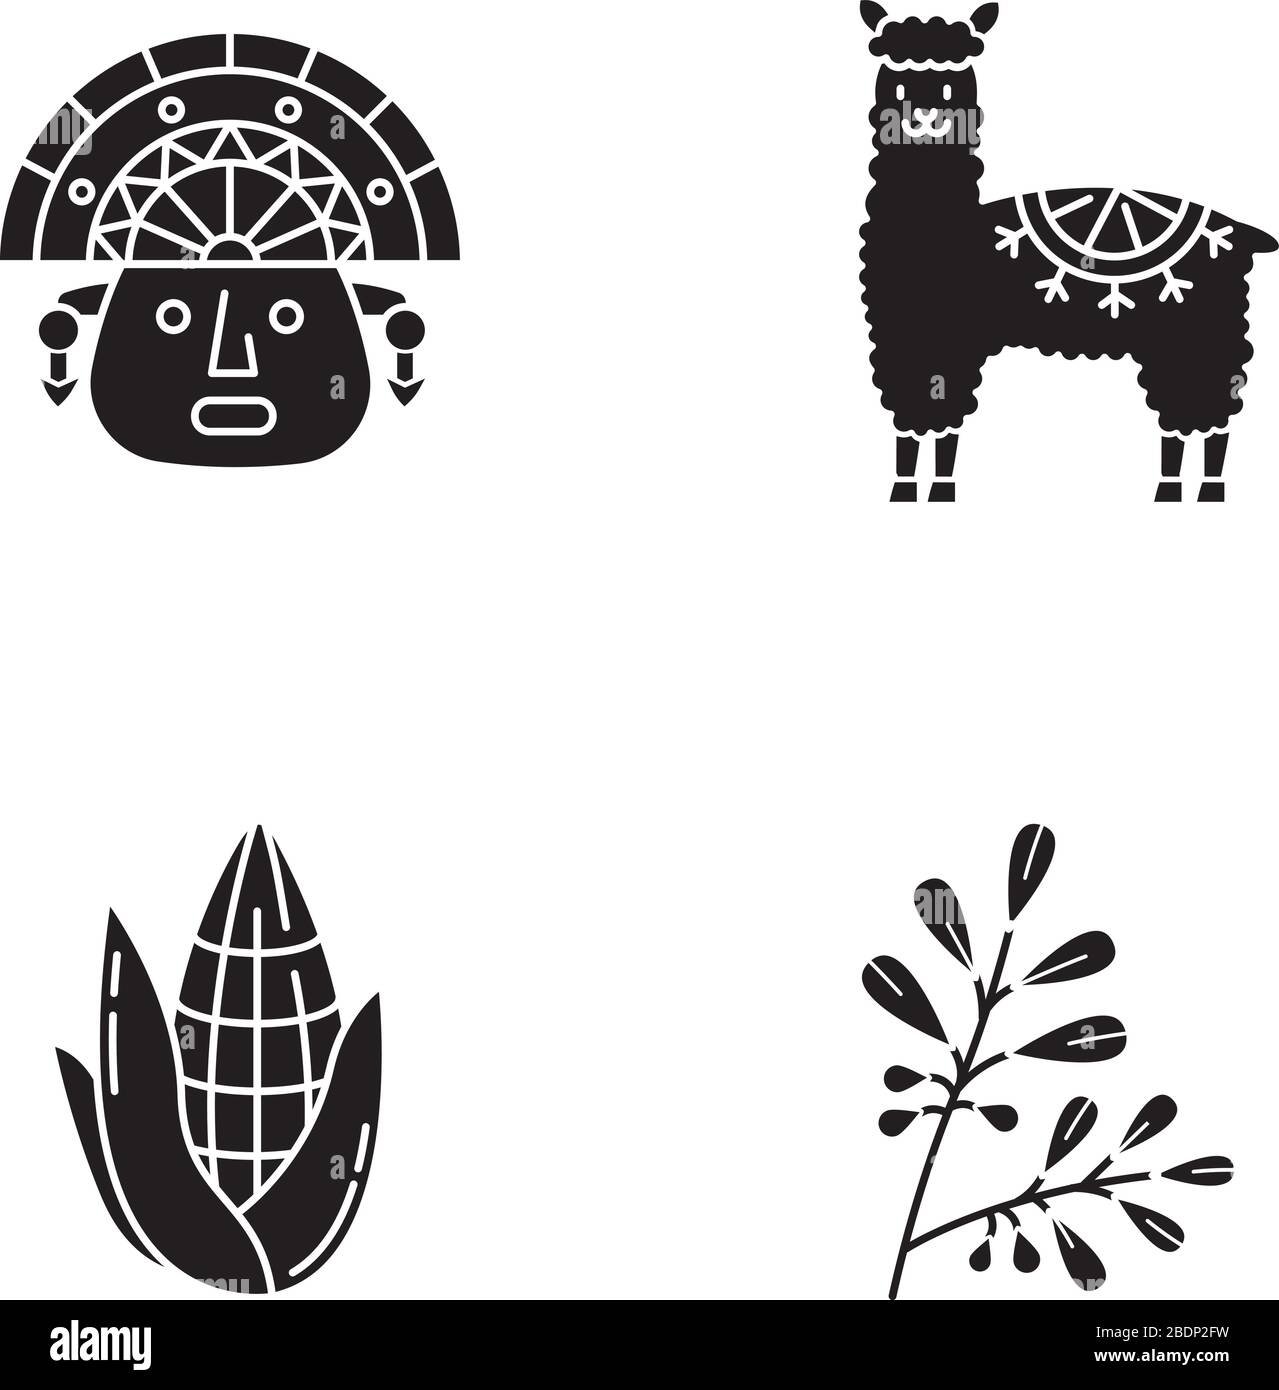 Perù icone glyph nero impostato su spazio bianco. Caratteristiche del paese andino. Alpaca, incas, mais, coca. Storia degli Incas e tradizioni di vita. Costumi peruviani Illustrazione Vettoriale